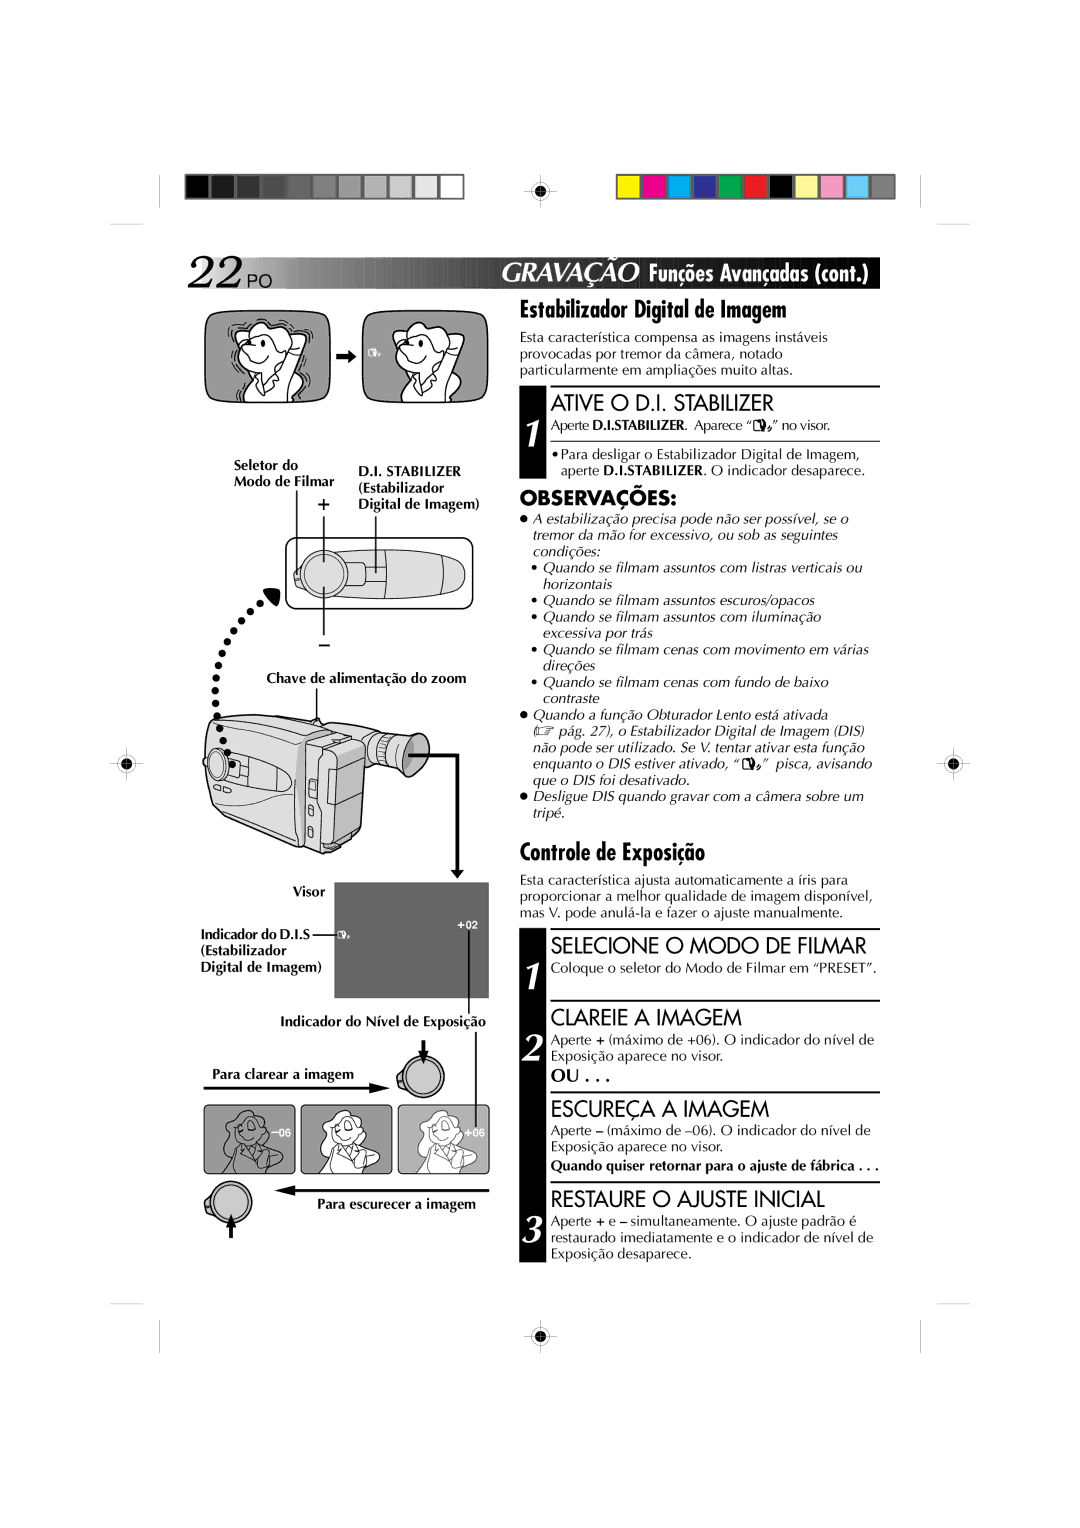 JVC GR-AX1027 manual GR Avaç ÃO Funções Avançadas, Estabilizador Digital de Imagem, Controle de Exposição 